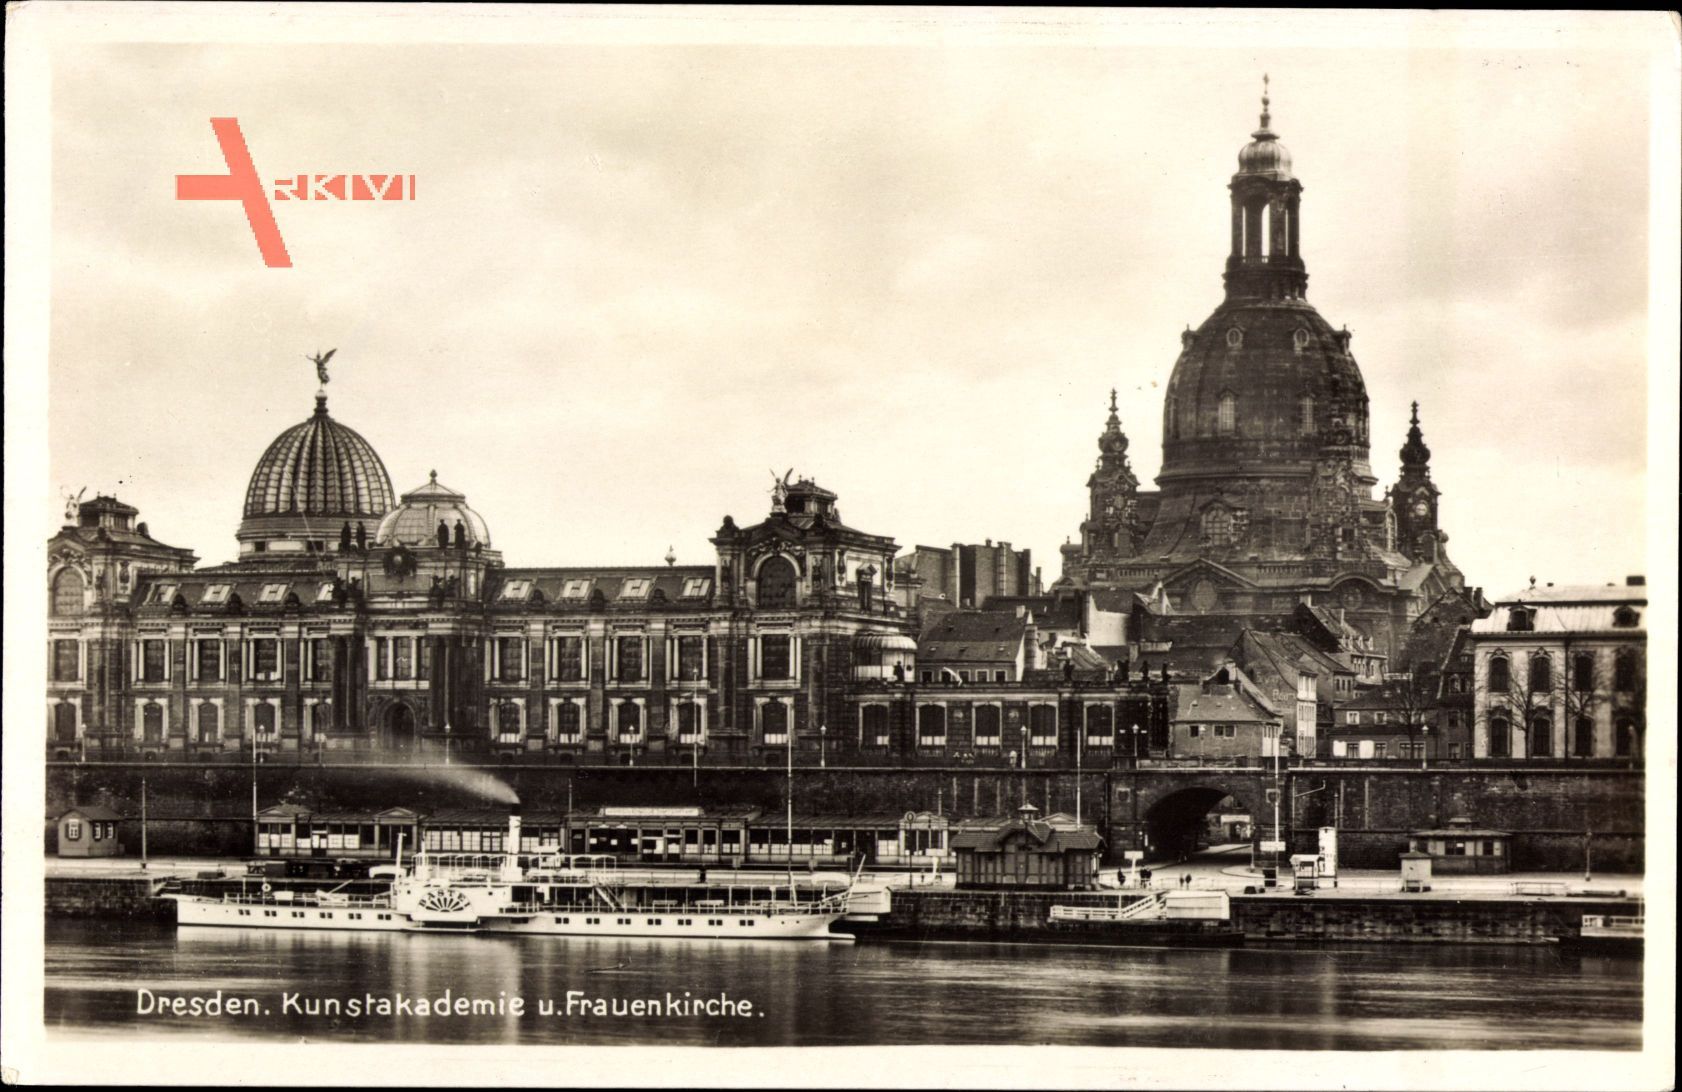 Dresden, Kunstakademie und Frauenkirche, Elbdampfer Bastei